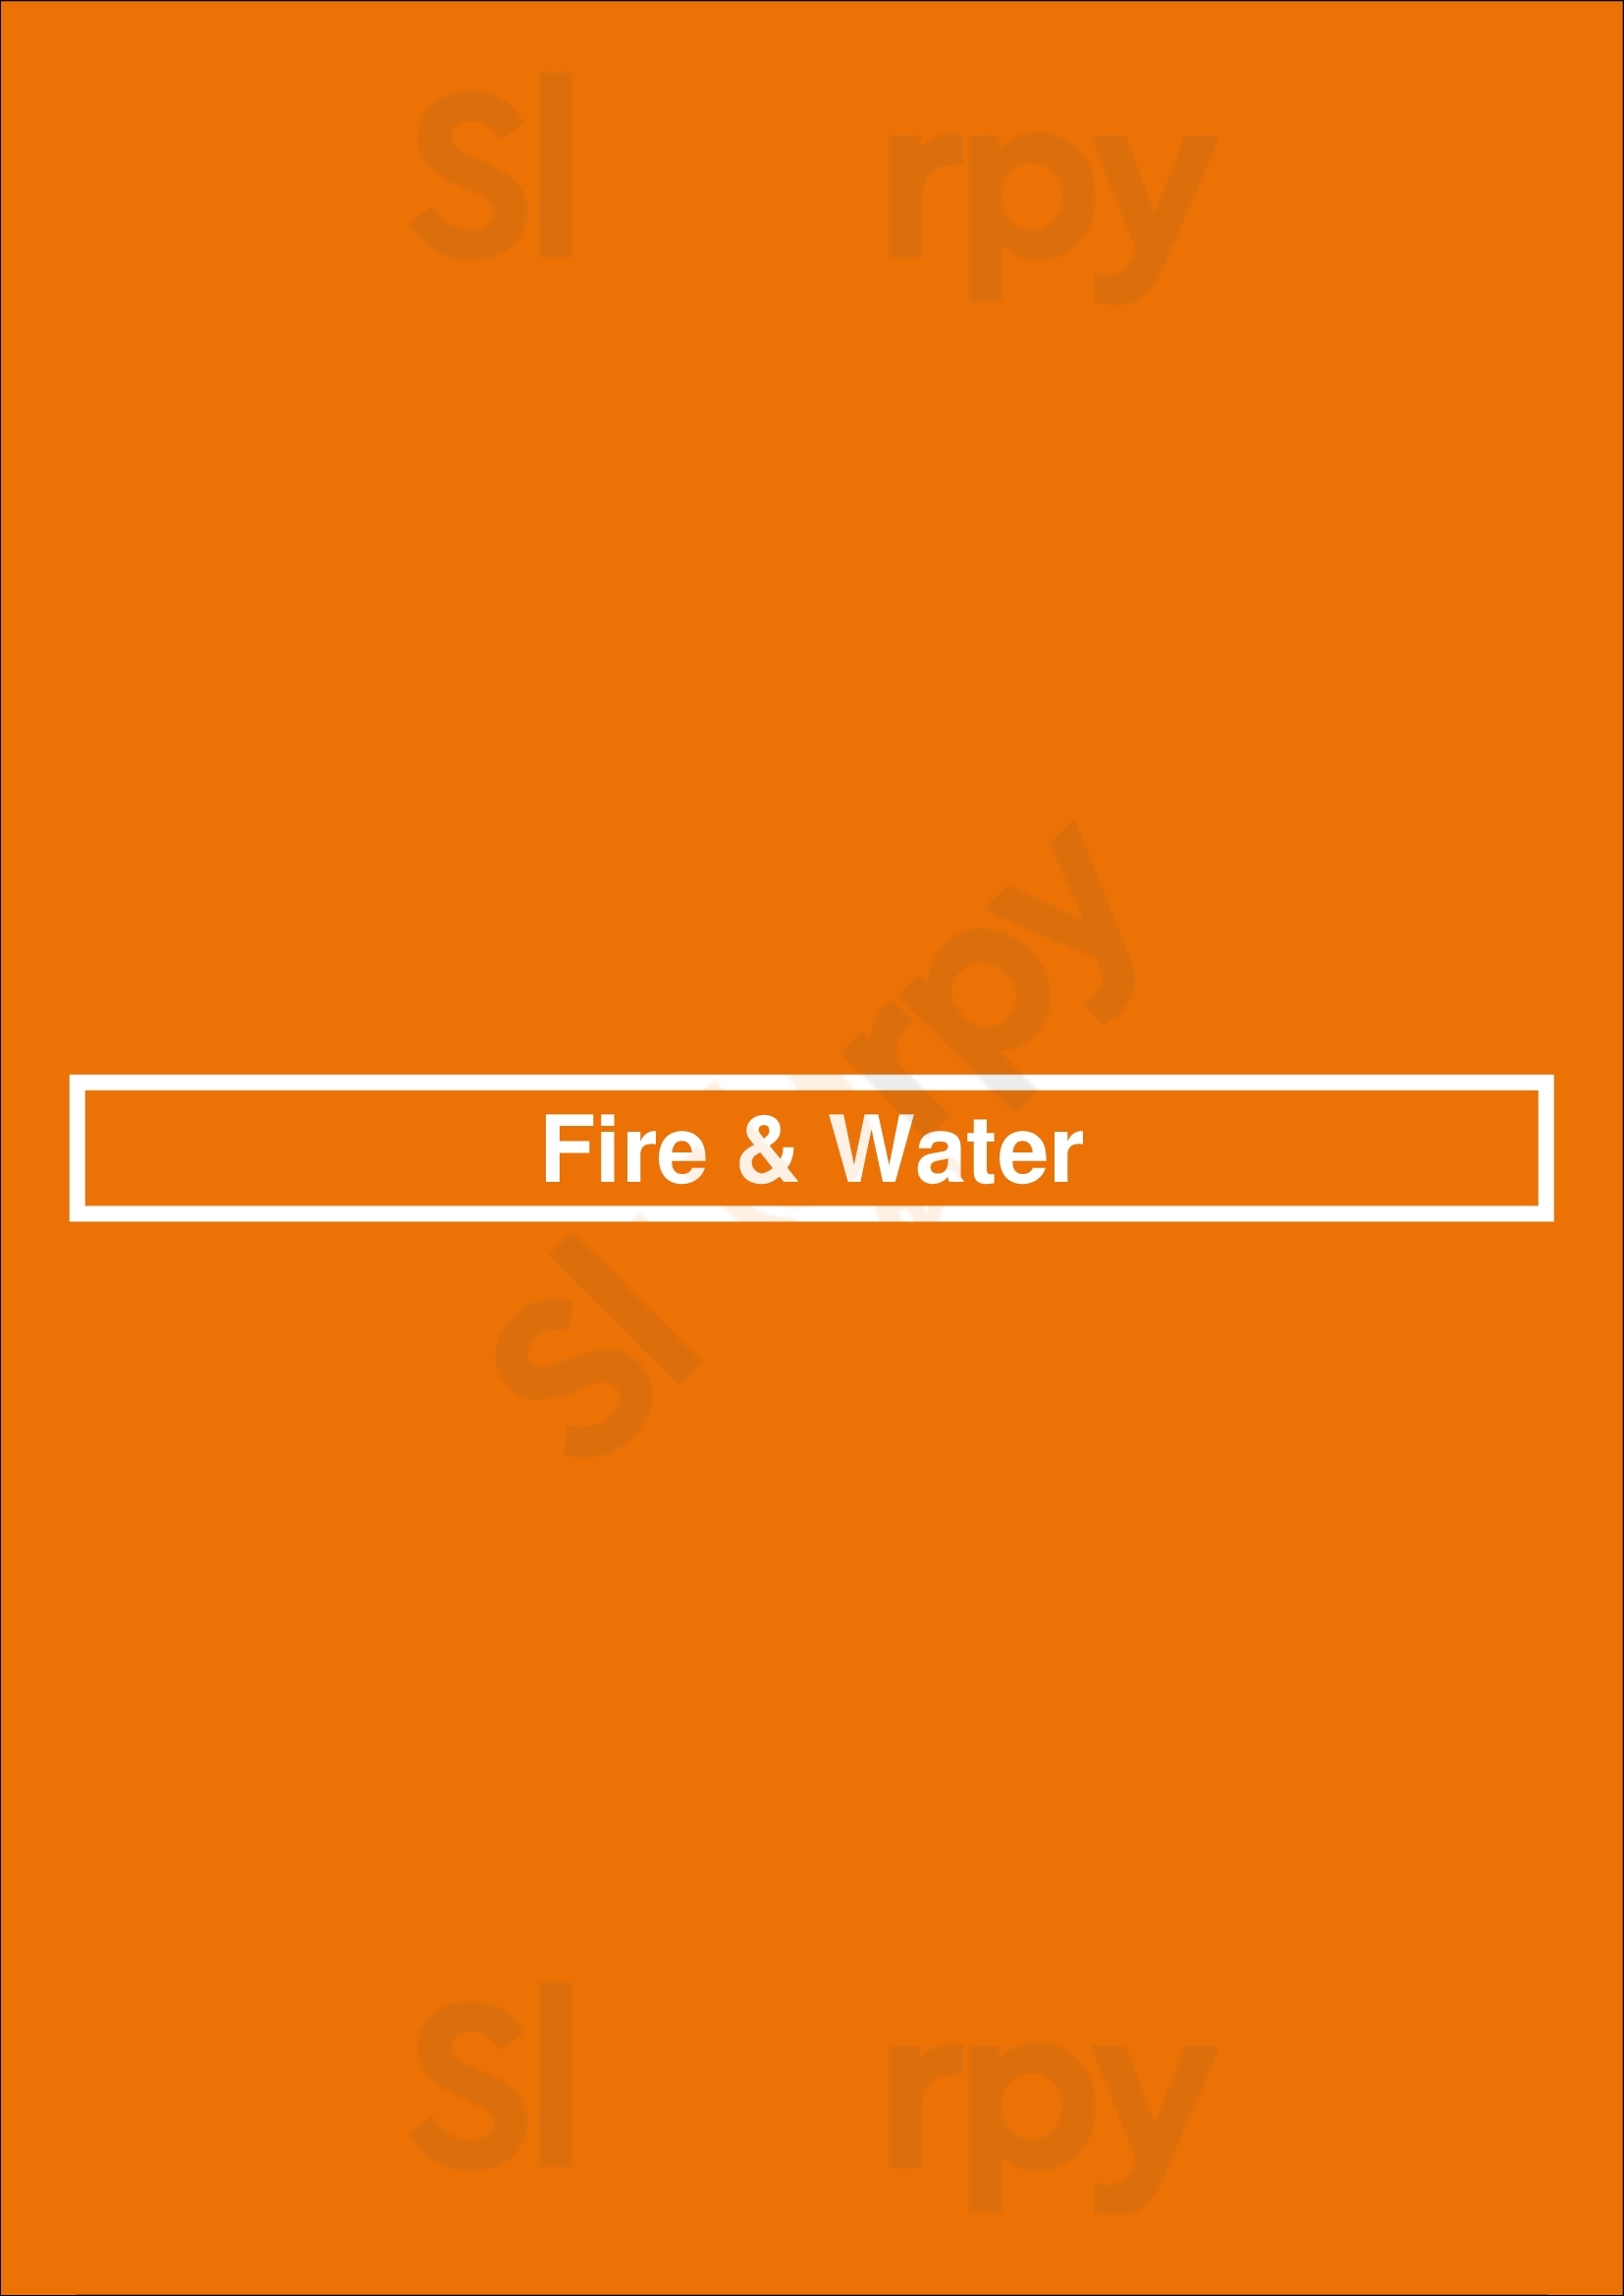 Fire & Water Victoria Menu - 1